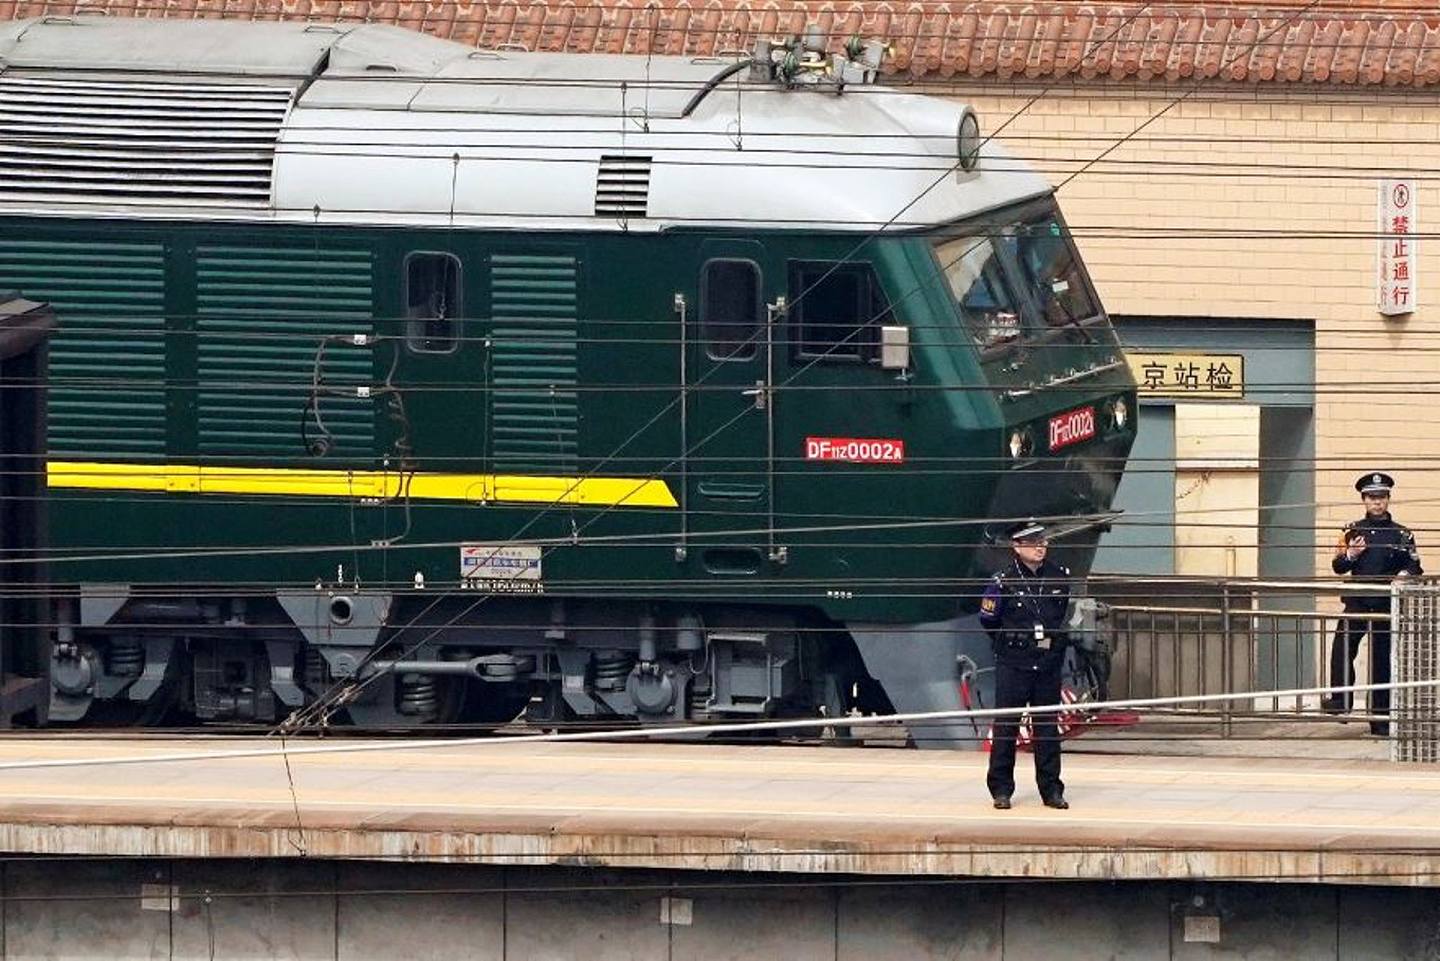 金正恩的绿皮专属列车过去多次在国际舞台亮相，例如去年美朝两国在越南的「特金会」，金正恩坐专列抵达。 （路透社）